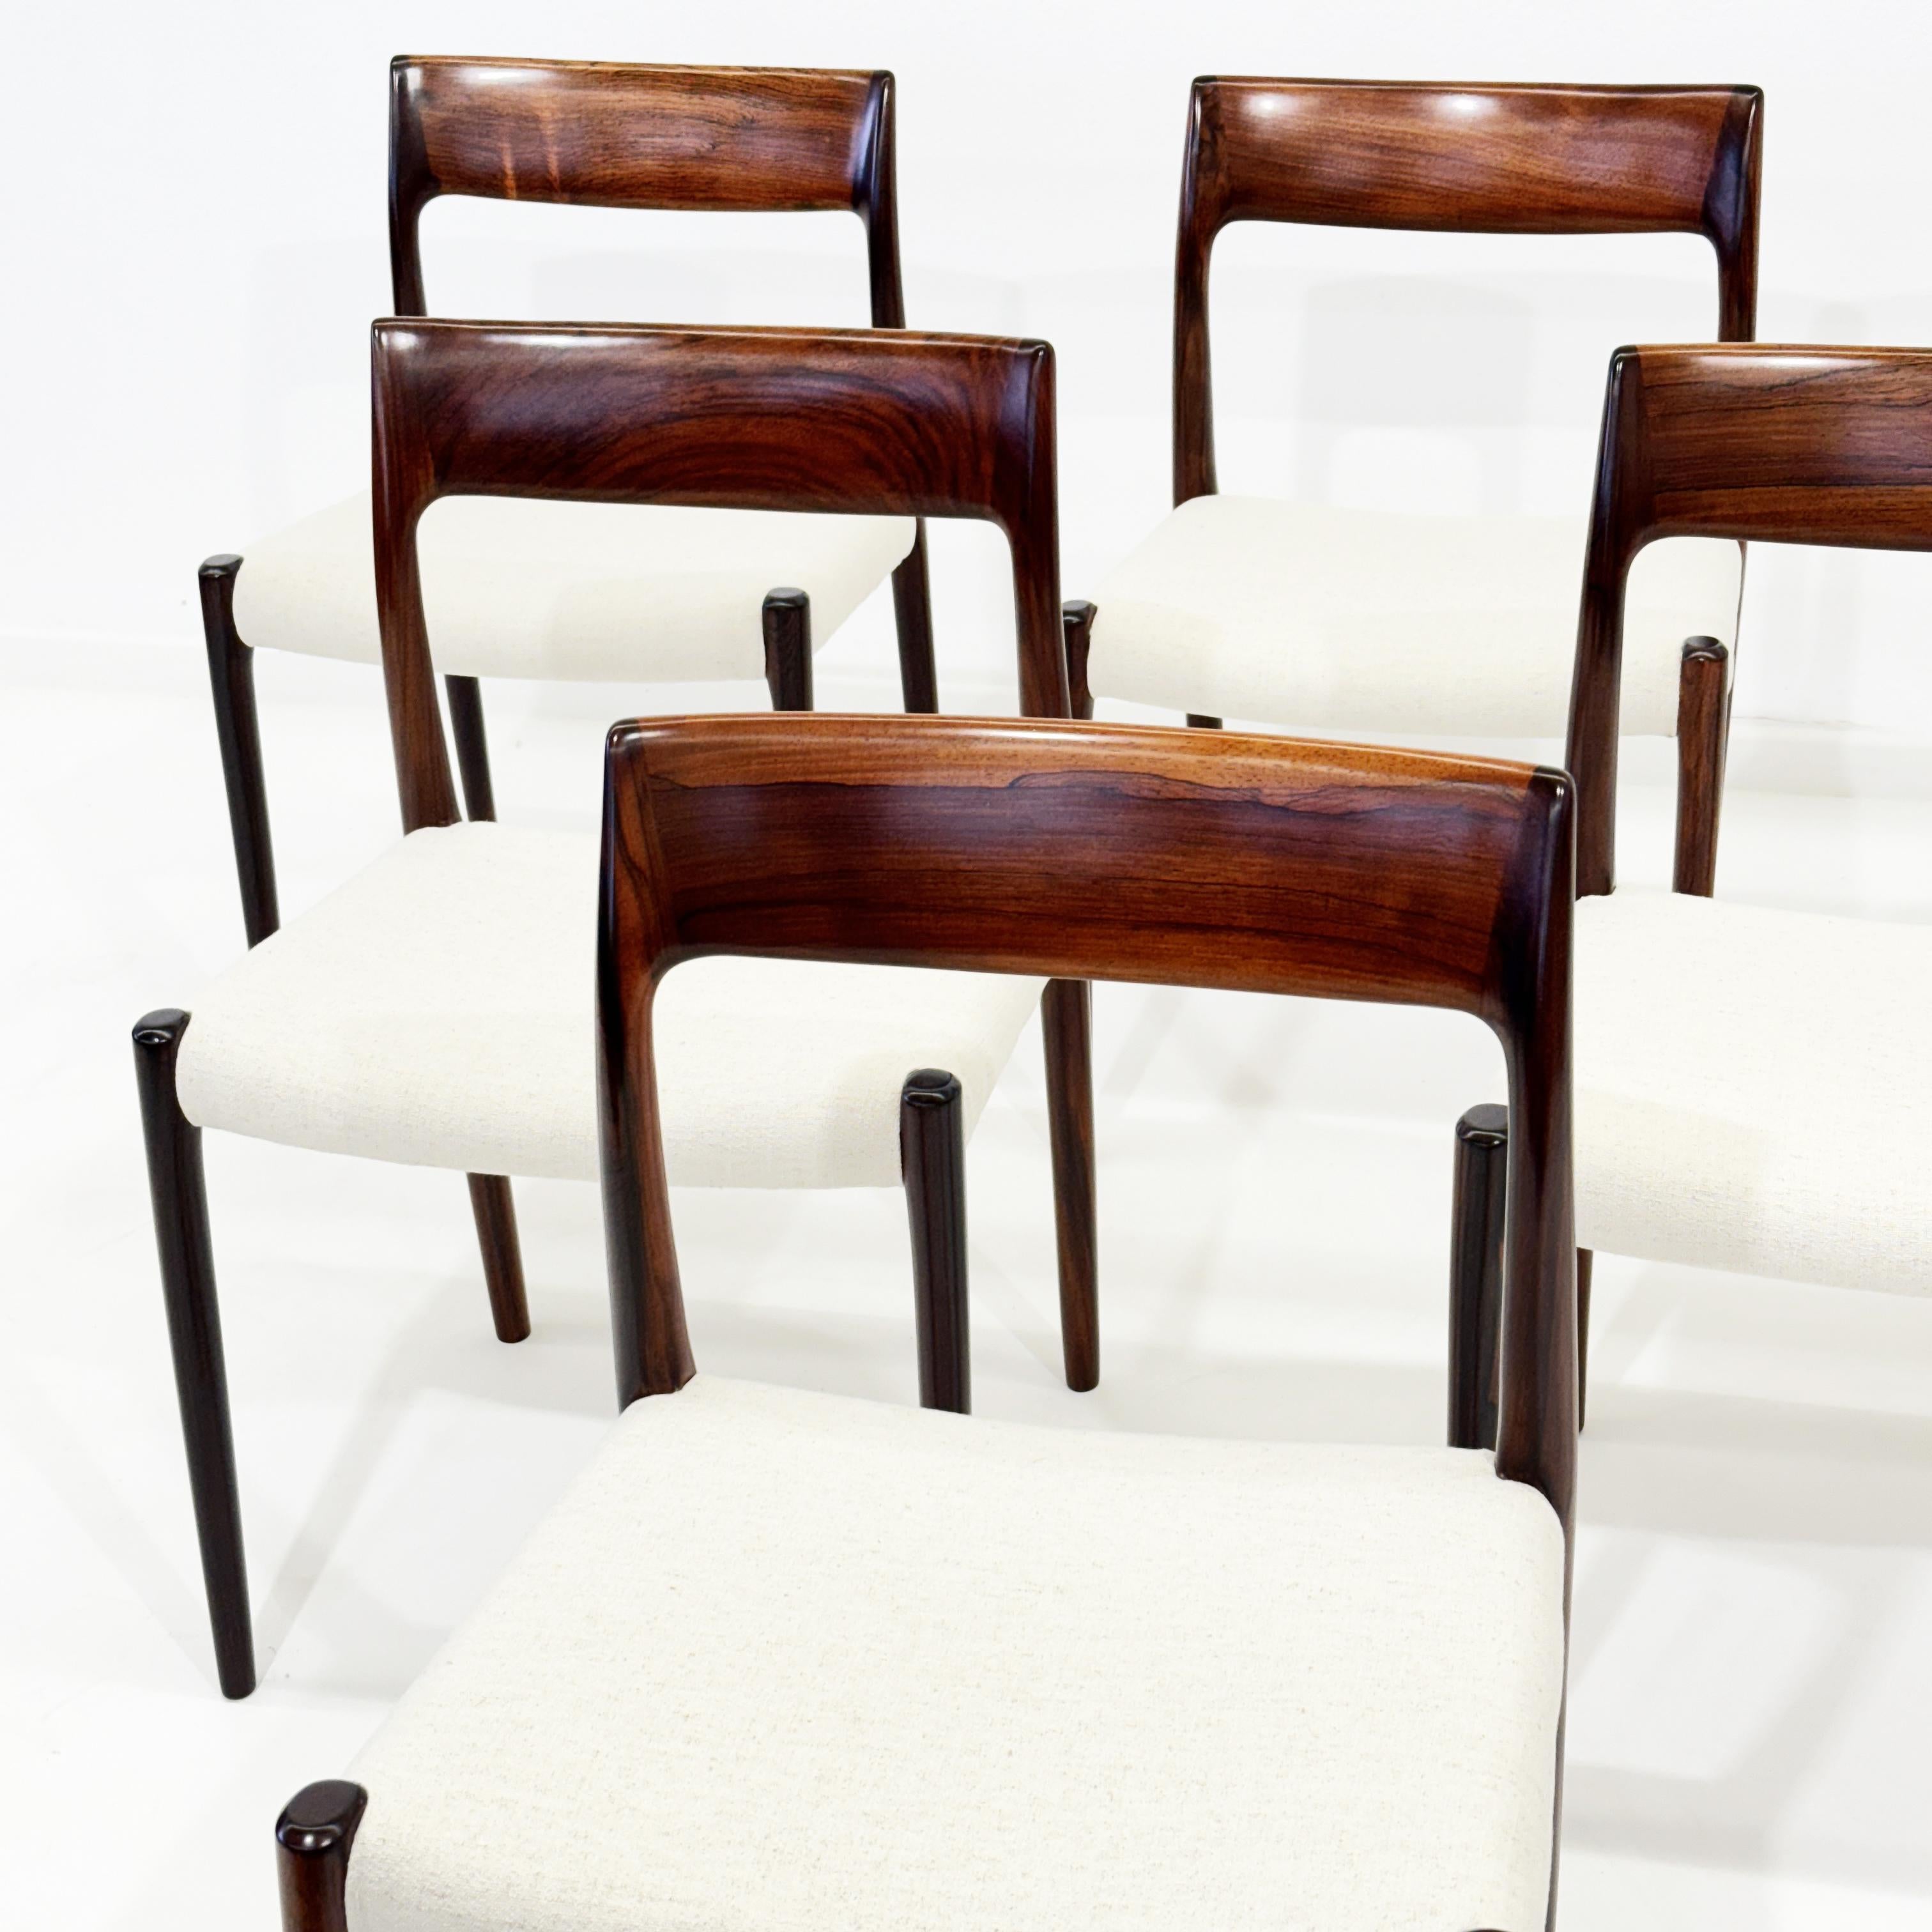 6 Niels Otto Møller Modell 77 in Palisanderholz.
Produziert von J.L. Moller Mobelfabrik, Dänemark 1960er Jahre
Die Stühle sind vom Hersteller gestempelt.


Das Holz der Stühle wurde fachmännisch restauriert, um seine ursprünglichen Eigenschaften und